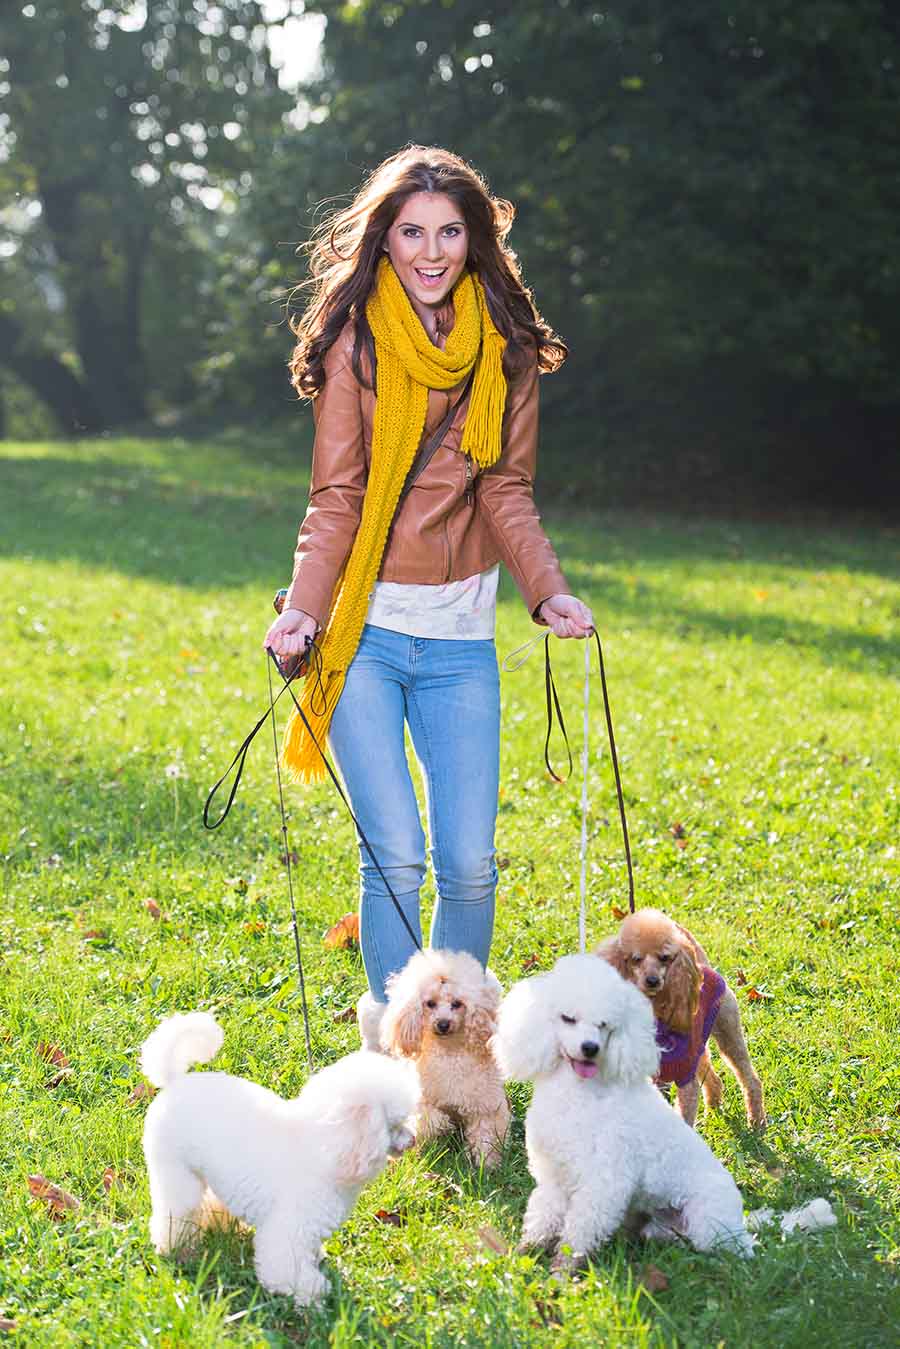 אשה מטיילת עם כלבים לפרנסתה. אילוסטרציה (shutterstock)